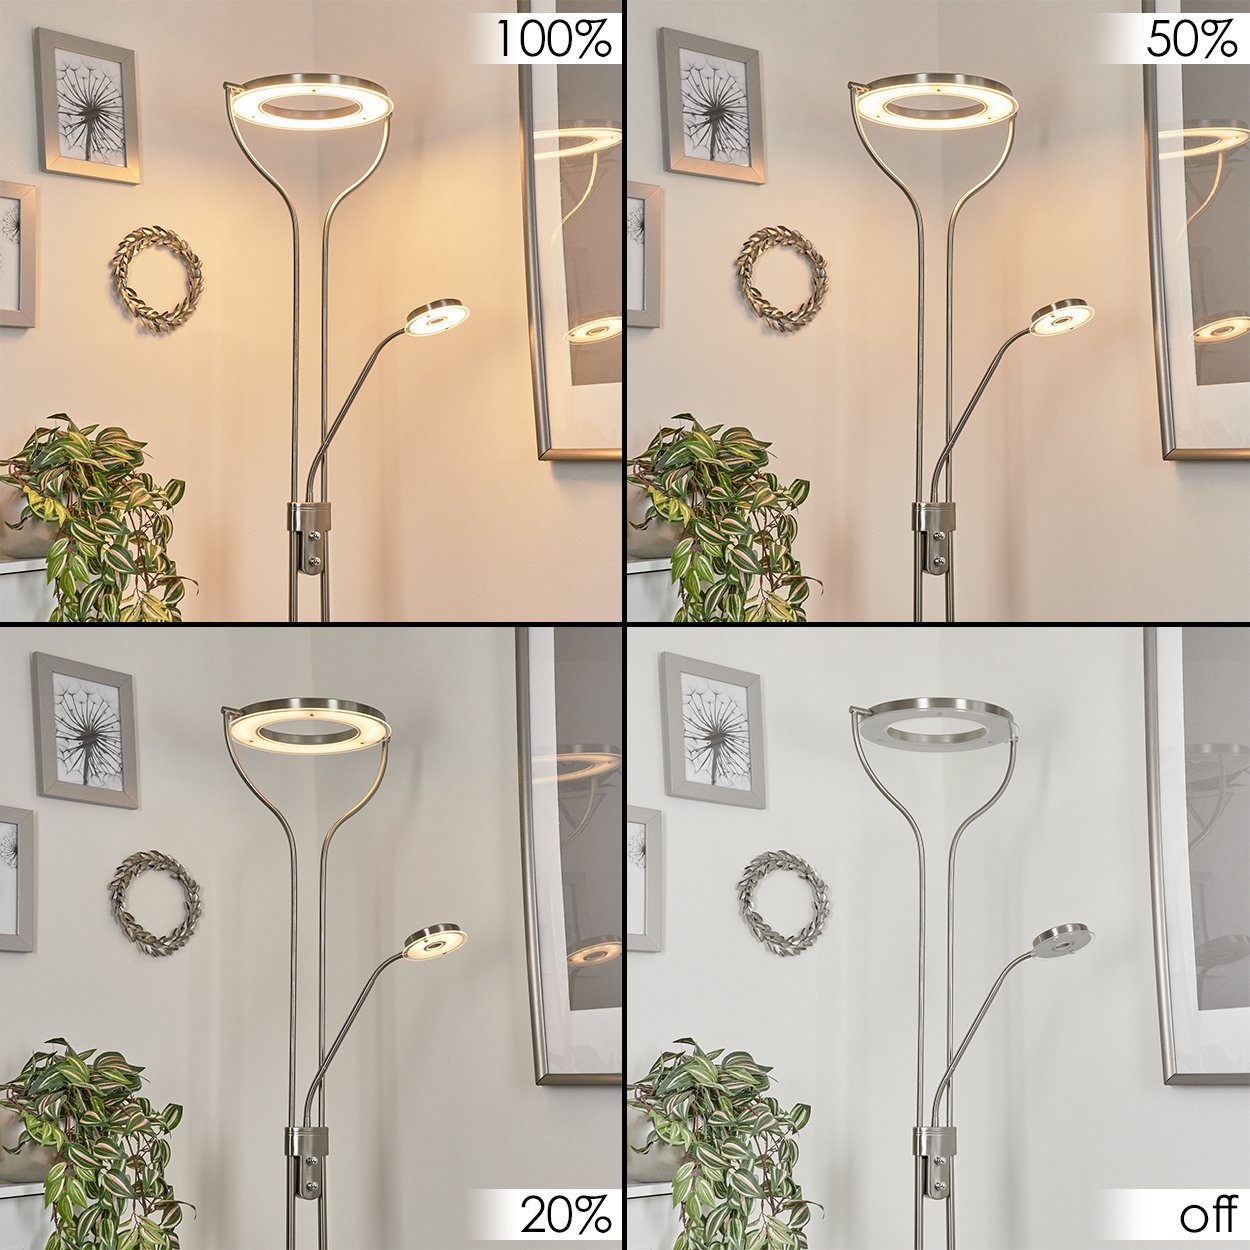 Lumen in Stehlampe integrierten + 17 LED aus Stehlampe Watt Metall/Kunststoff/Glas »Rualp« mit hofstein 3000 Tastdimmer, Nickel-matt/Klar/Weiß, LED, 1660 Kelvin, Bodenlampe